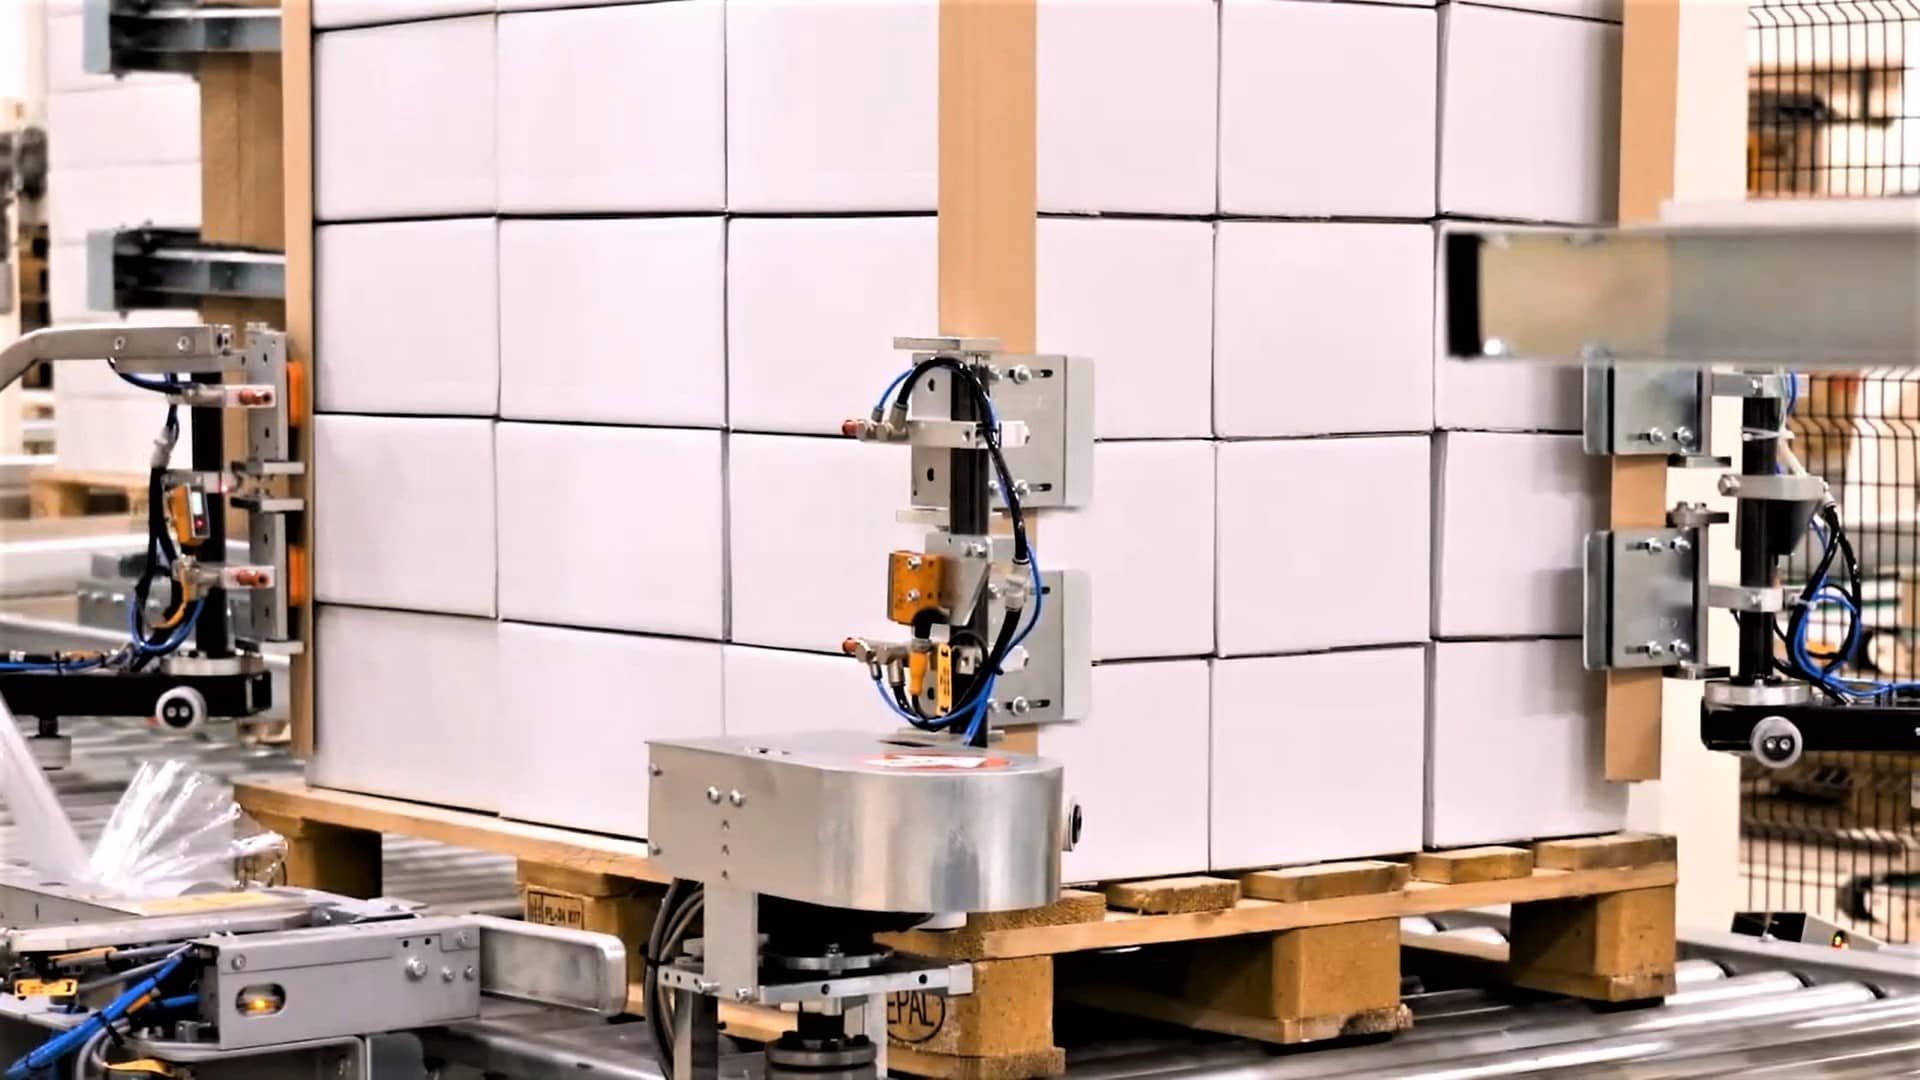 Паллетообмотчик Робопак. Паллетизатор поддонов. MASTERWRAP Plus XL Robopac. Конструкция робота упаковщика.